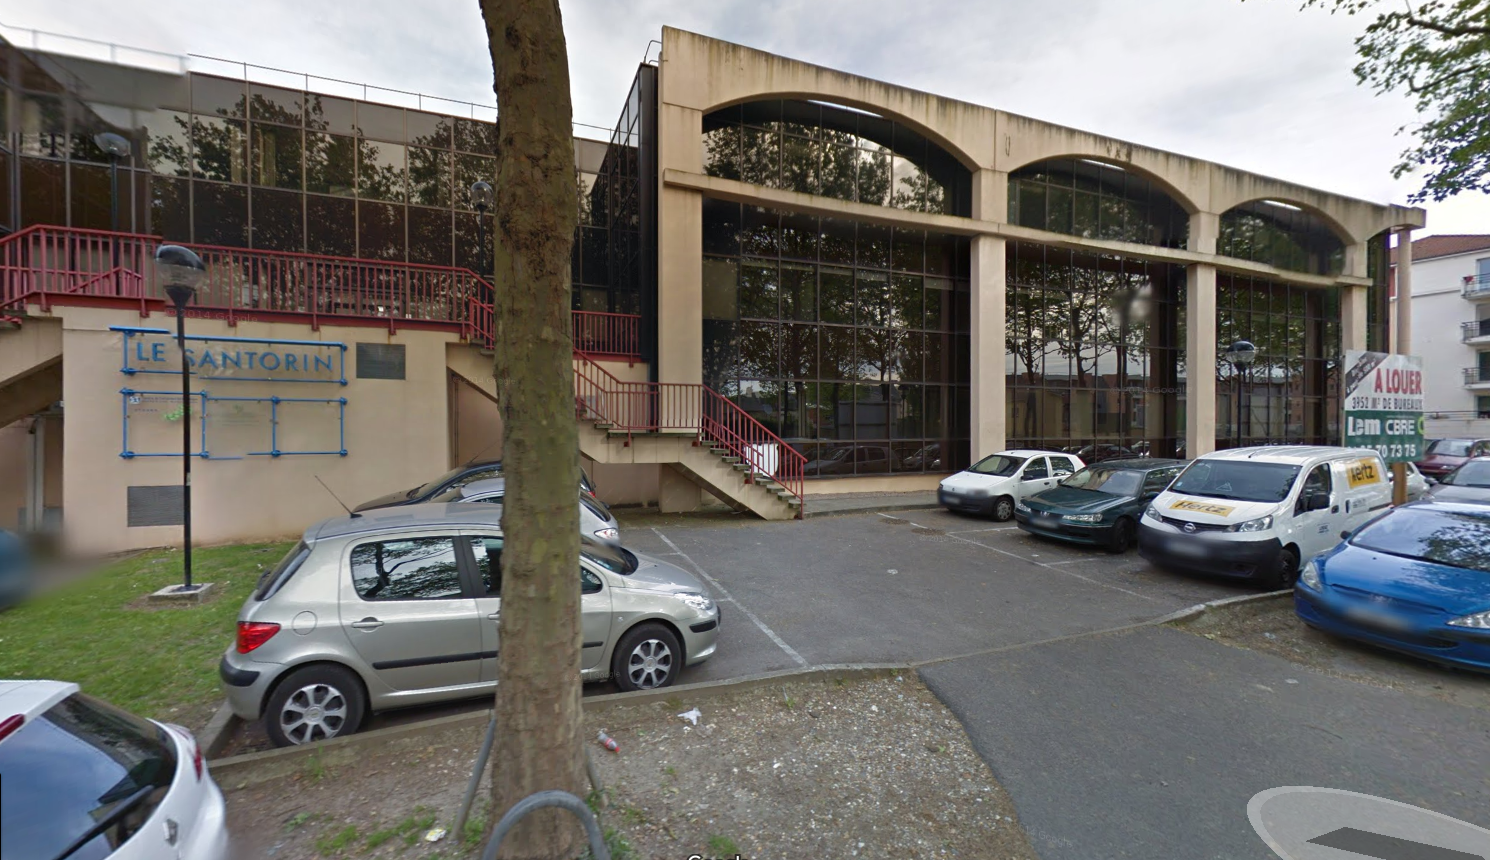 L'immeuble Santorin situé au 31, avenue de la Libération sur la rive gauche de Rouen a longtemps hébergé les activités de la société Educatel avant de devenir ces derniers mois un refuge pour des personnes en difficulté